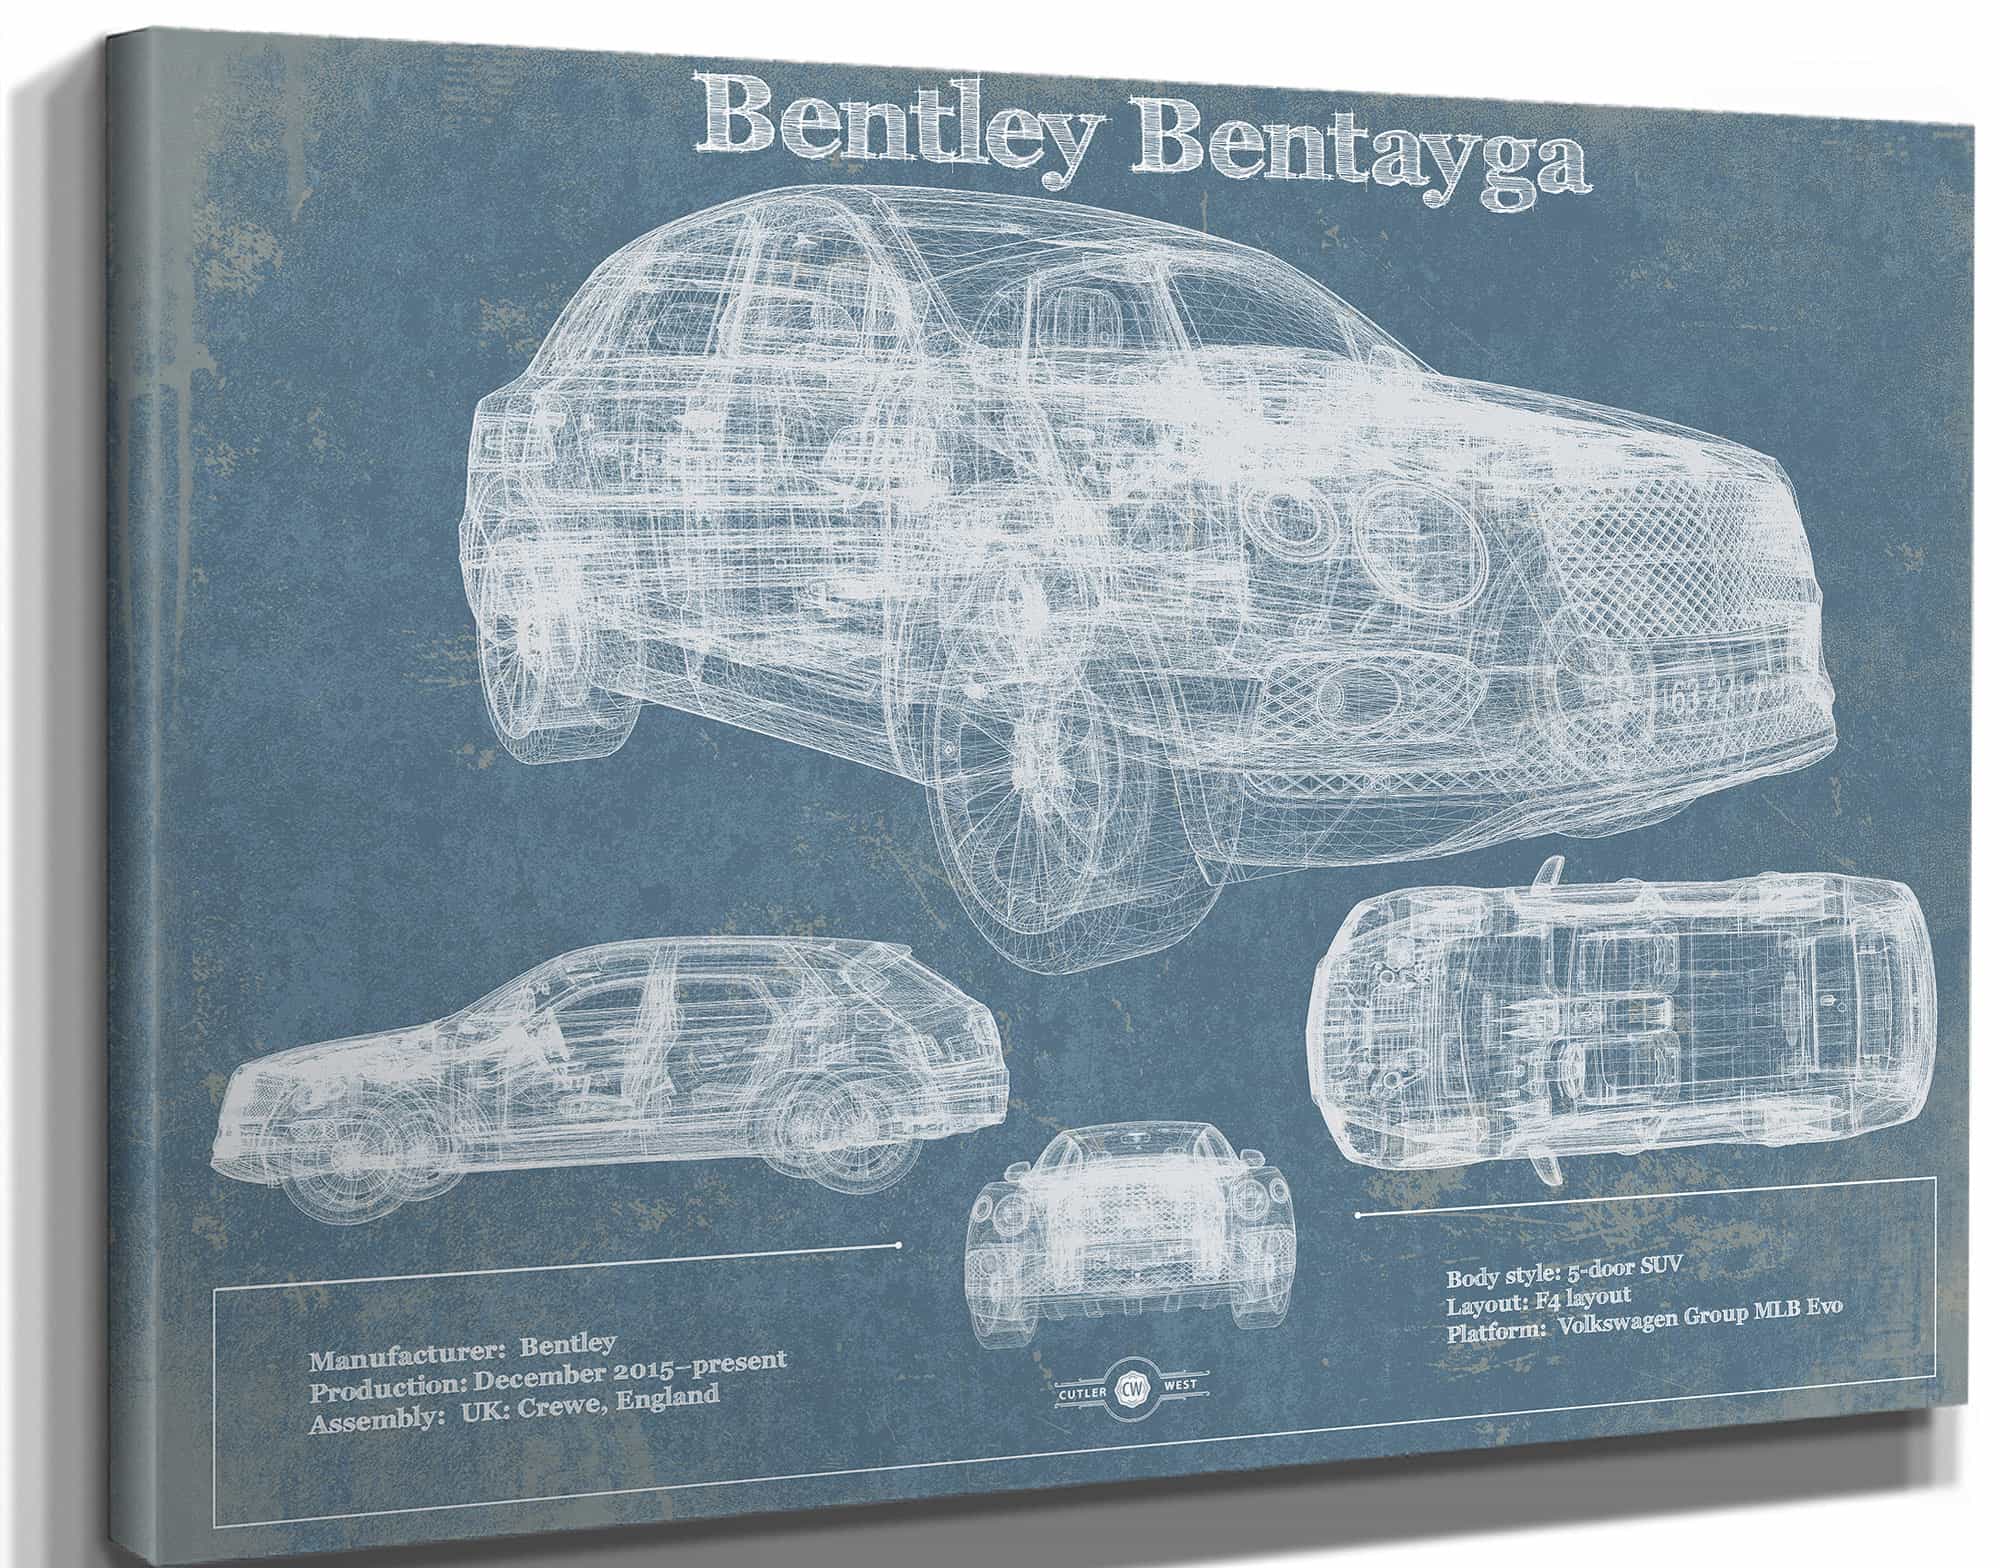 2017 Bentley Bentayga Vintage Car Print